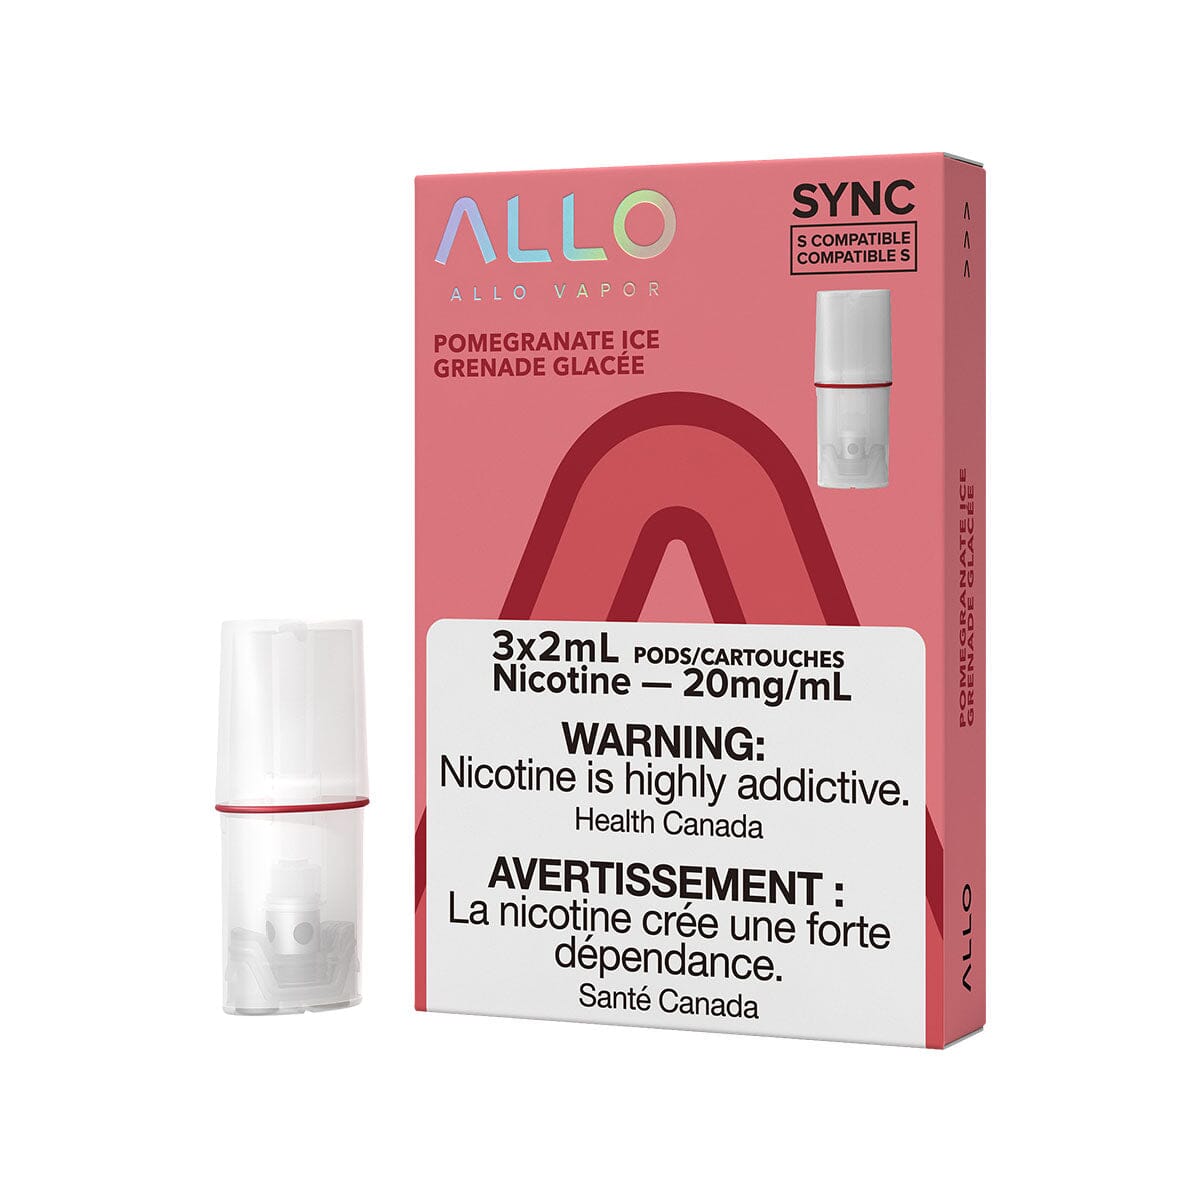 STLTH Compatible Allo Sync Pomegranate Ice Vape Pods Pre-filled Pod Allo Sync 